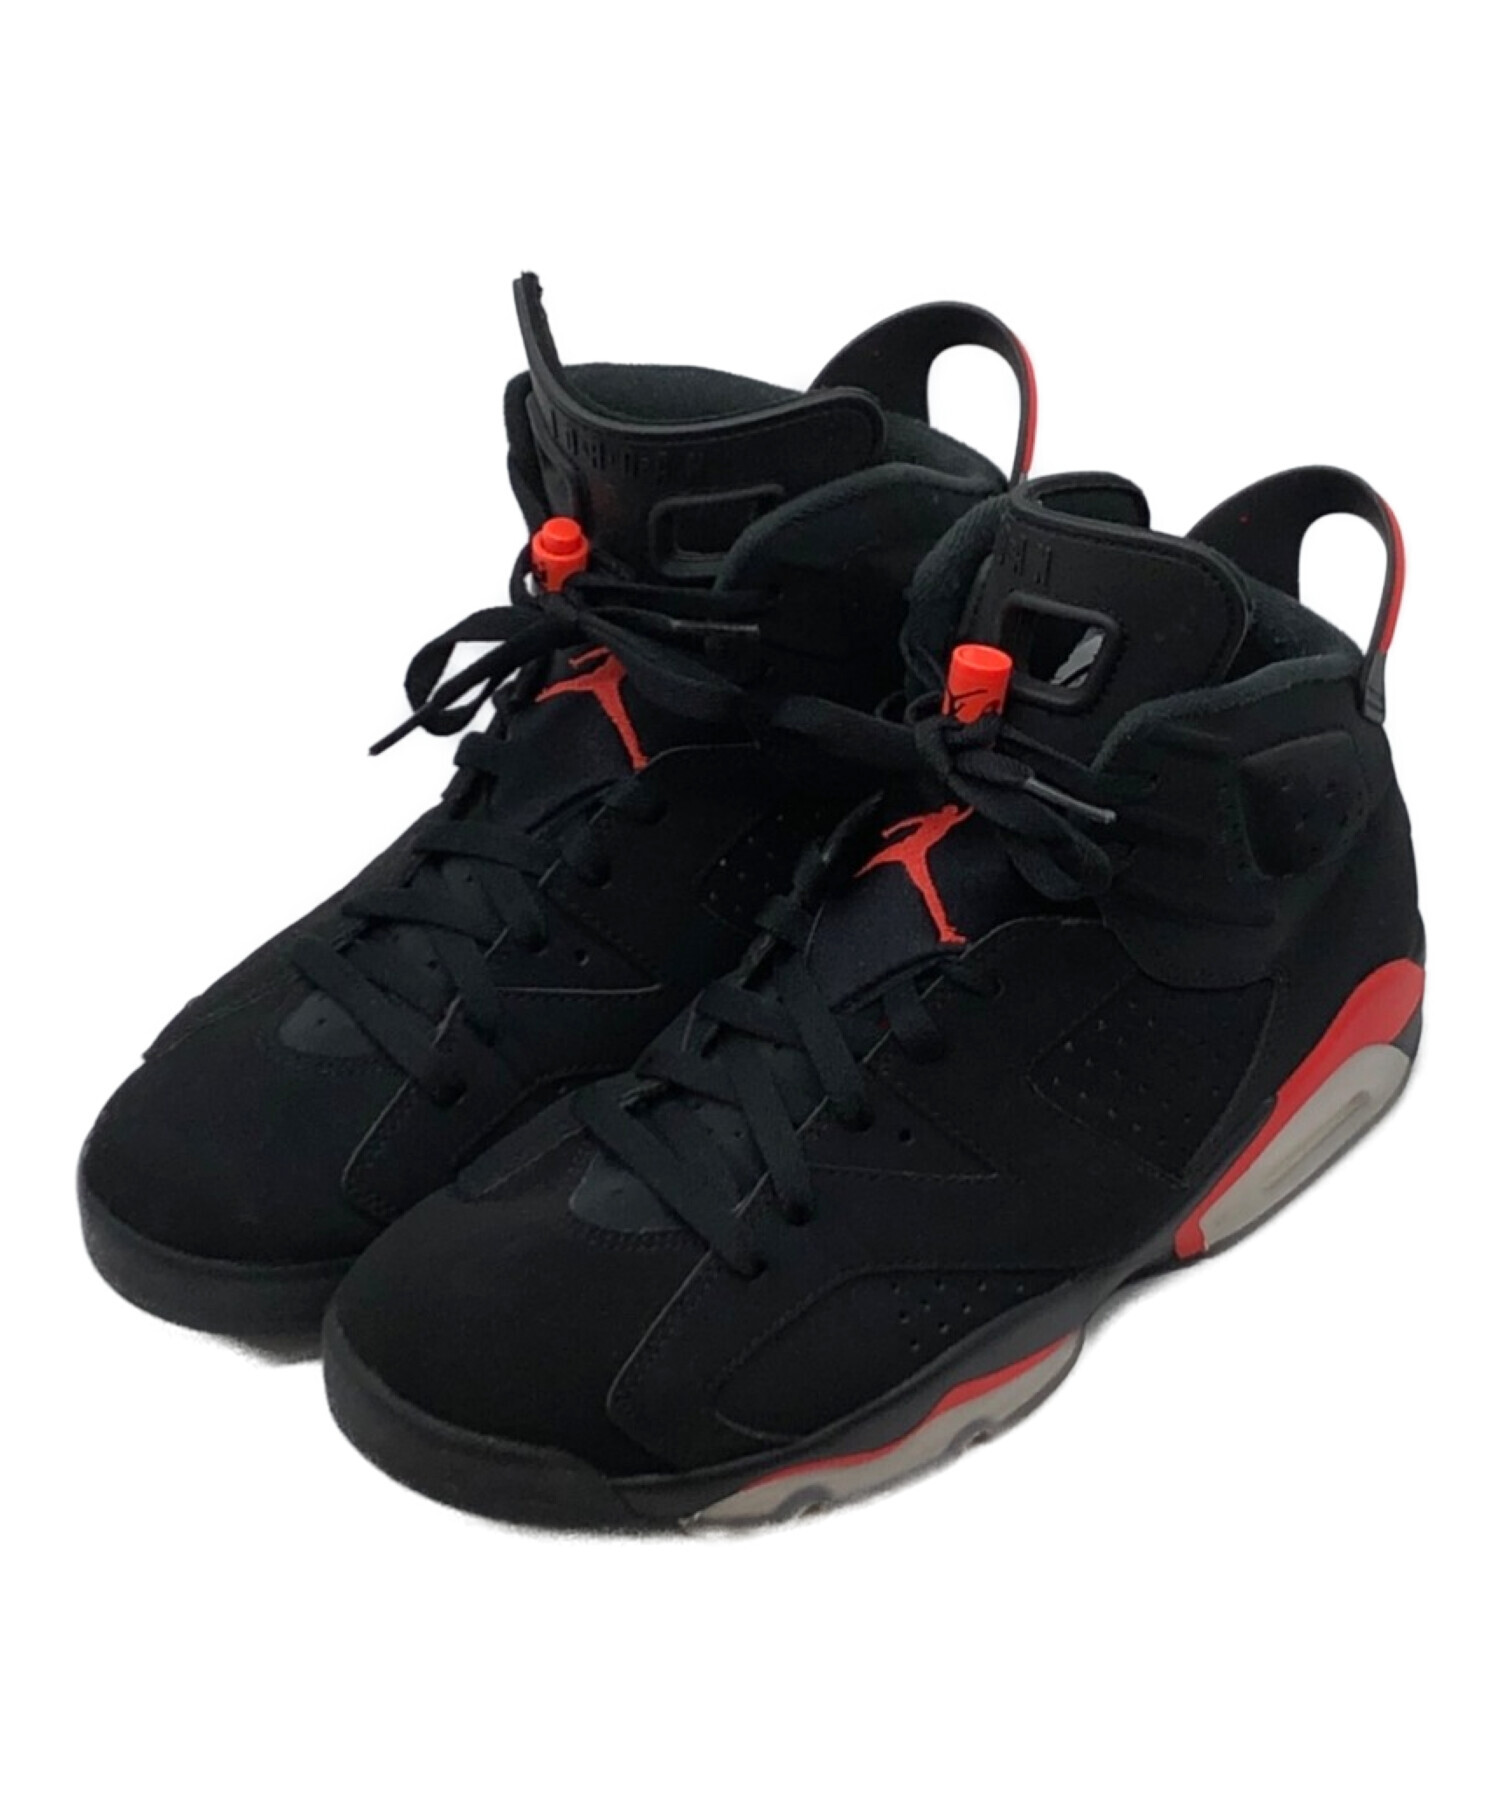 Nike air jordan 6 og black infrared